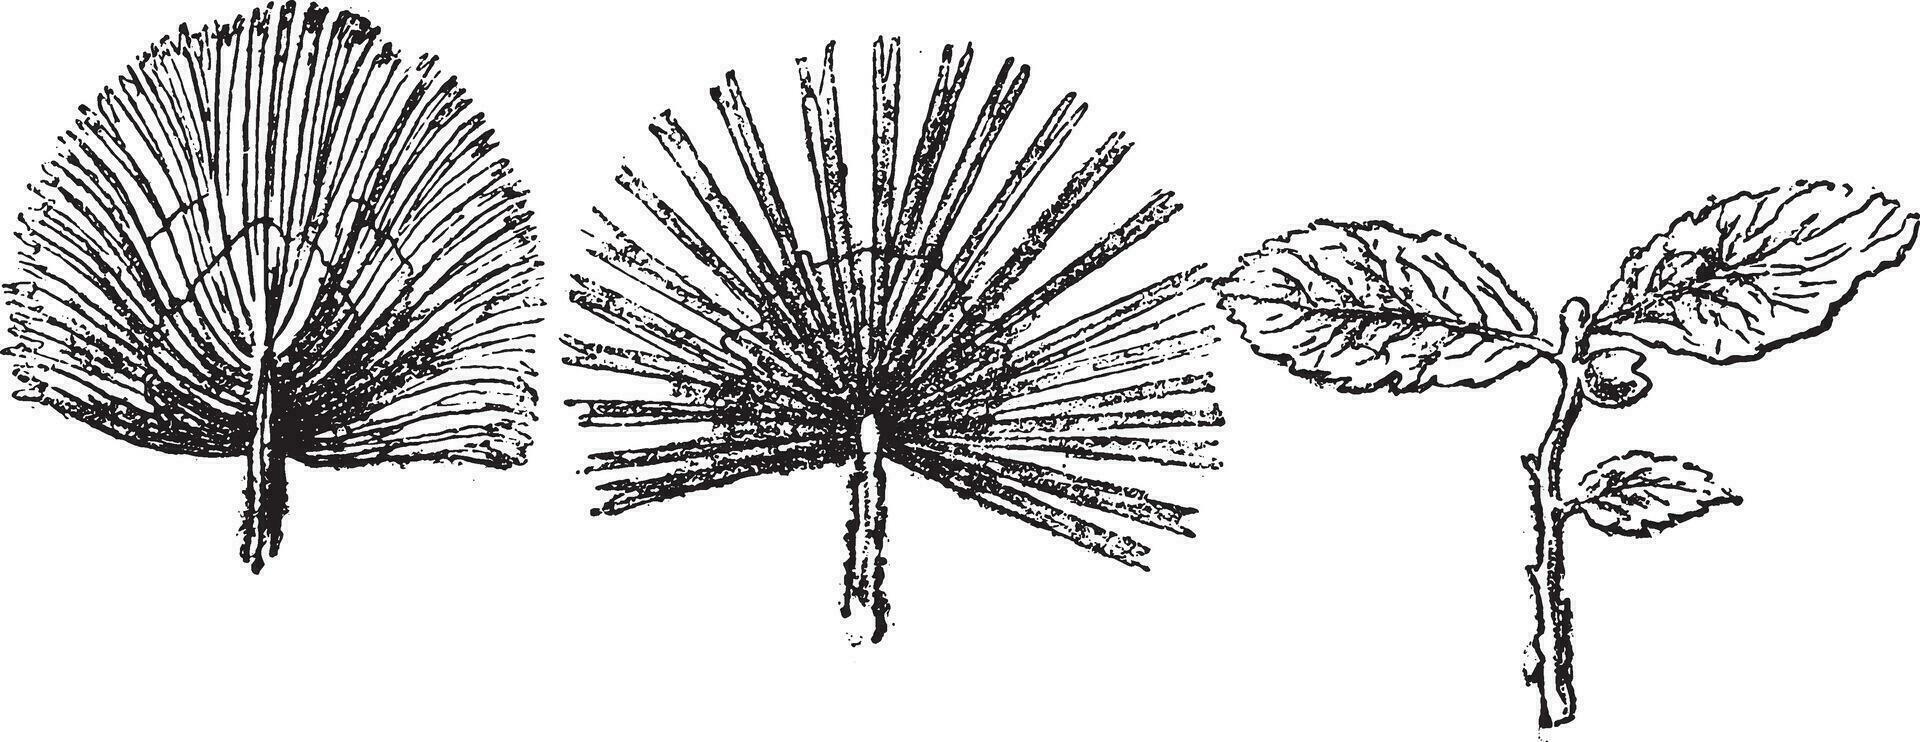 sabal importante, palma arboles de el inferior mioceno de Suiza, Clásico grabado. vector